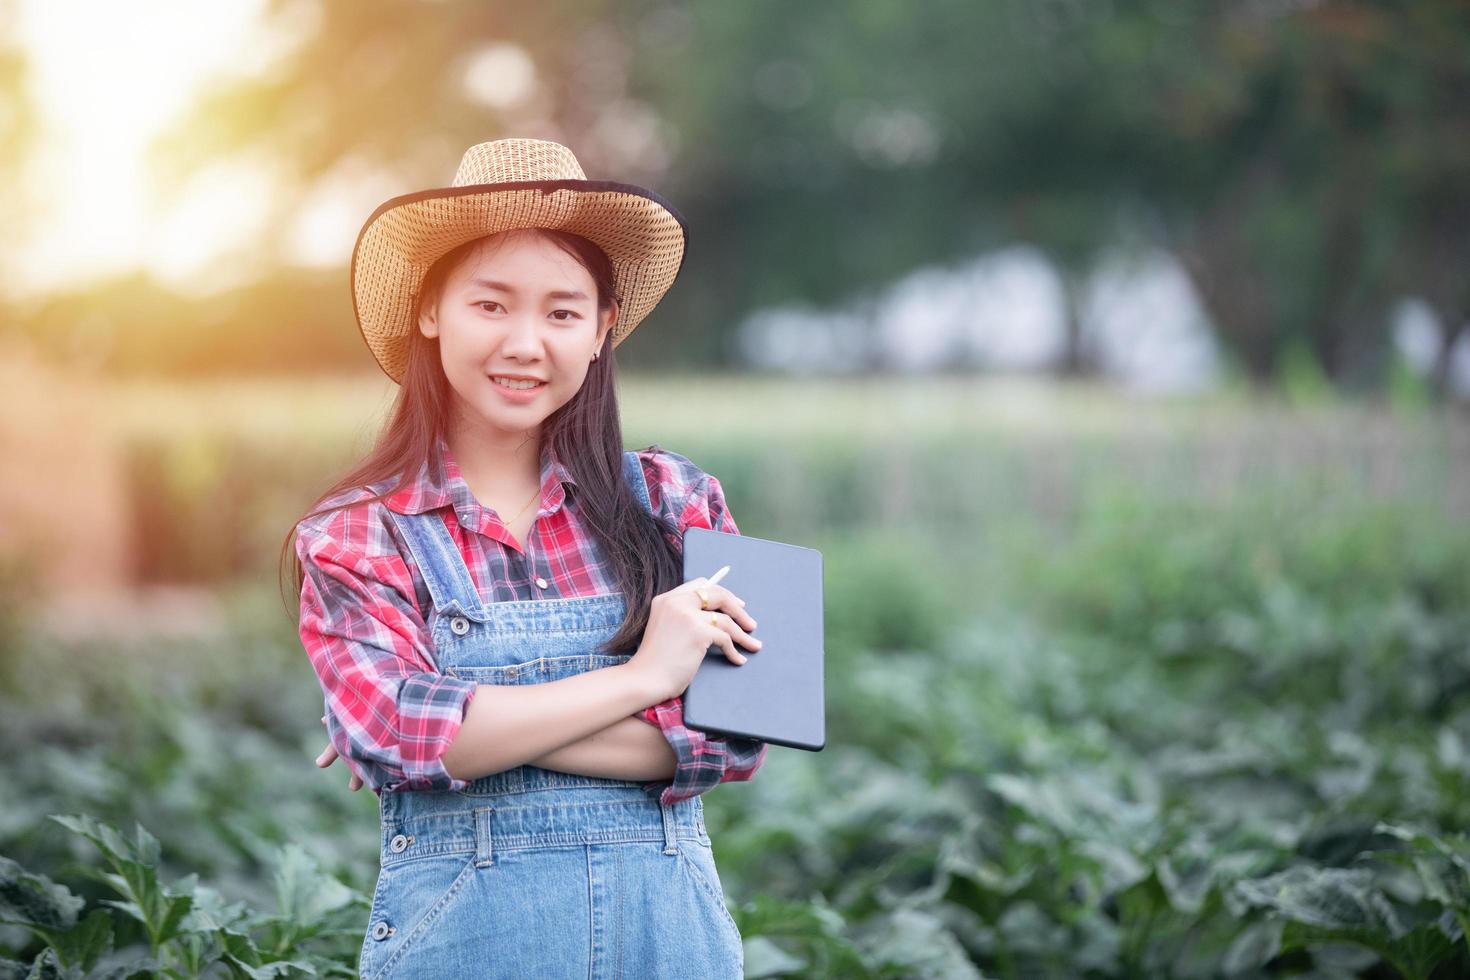 mujeres agrónomas asiáticas y agricultoras que utilizan tecnología para inspeccionar en el campo agrícola y vegetal orgánico foto